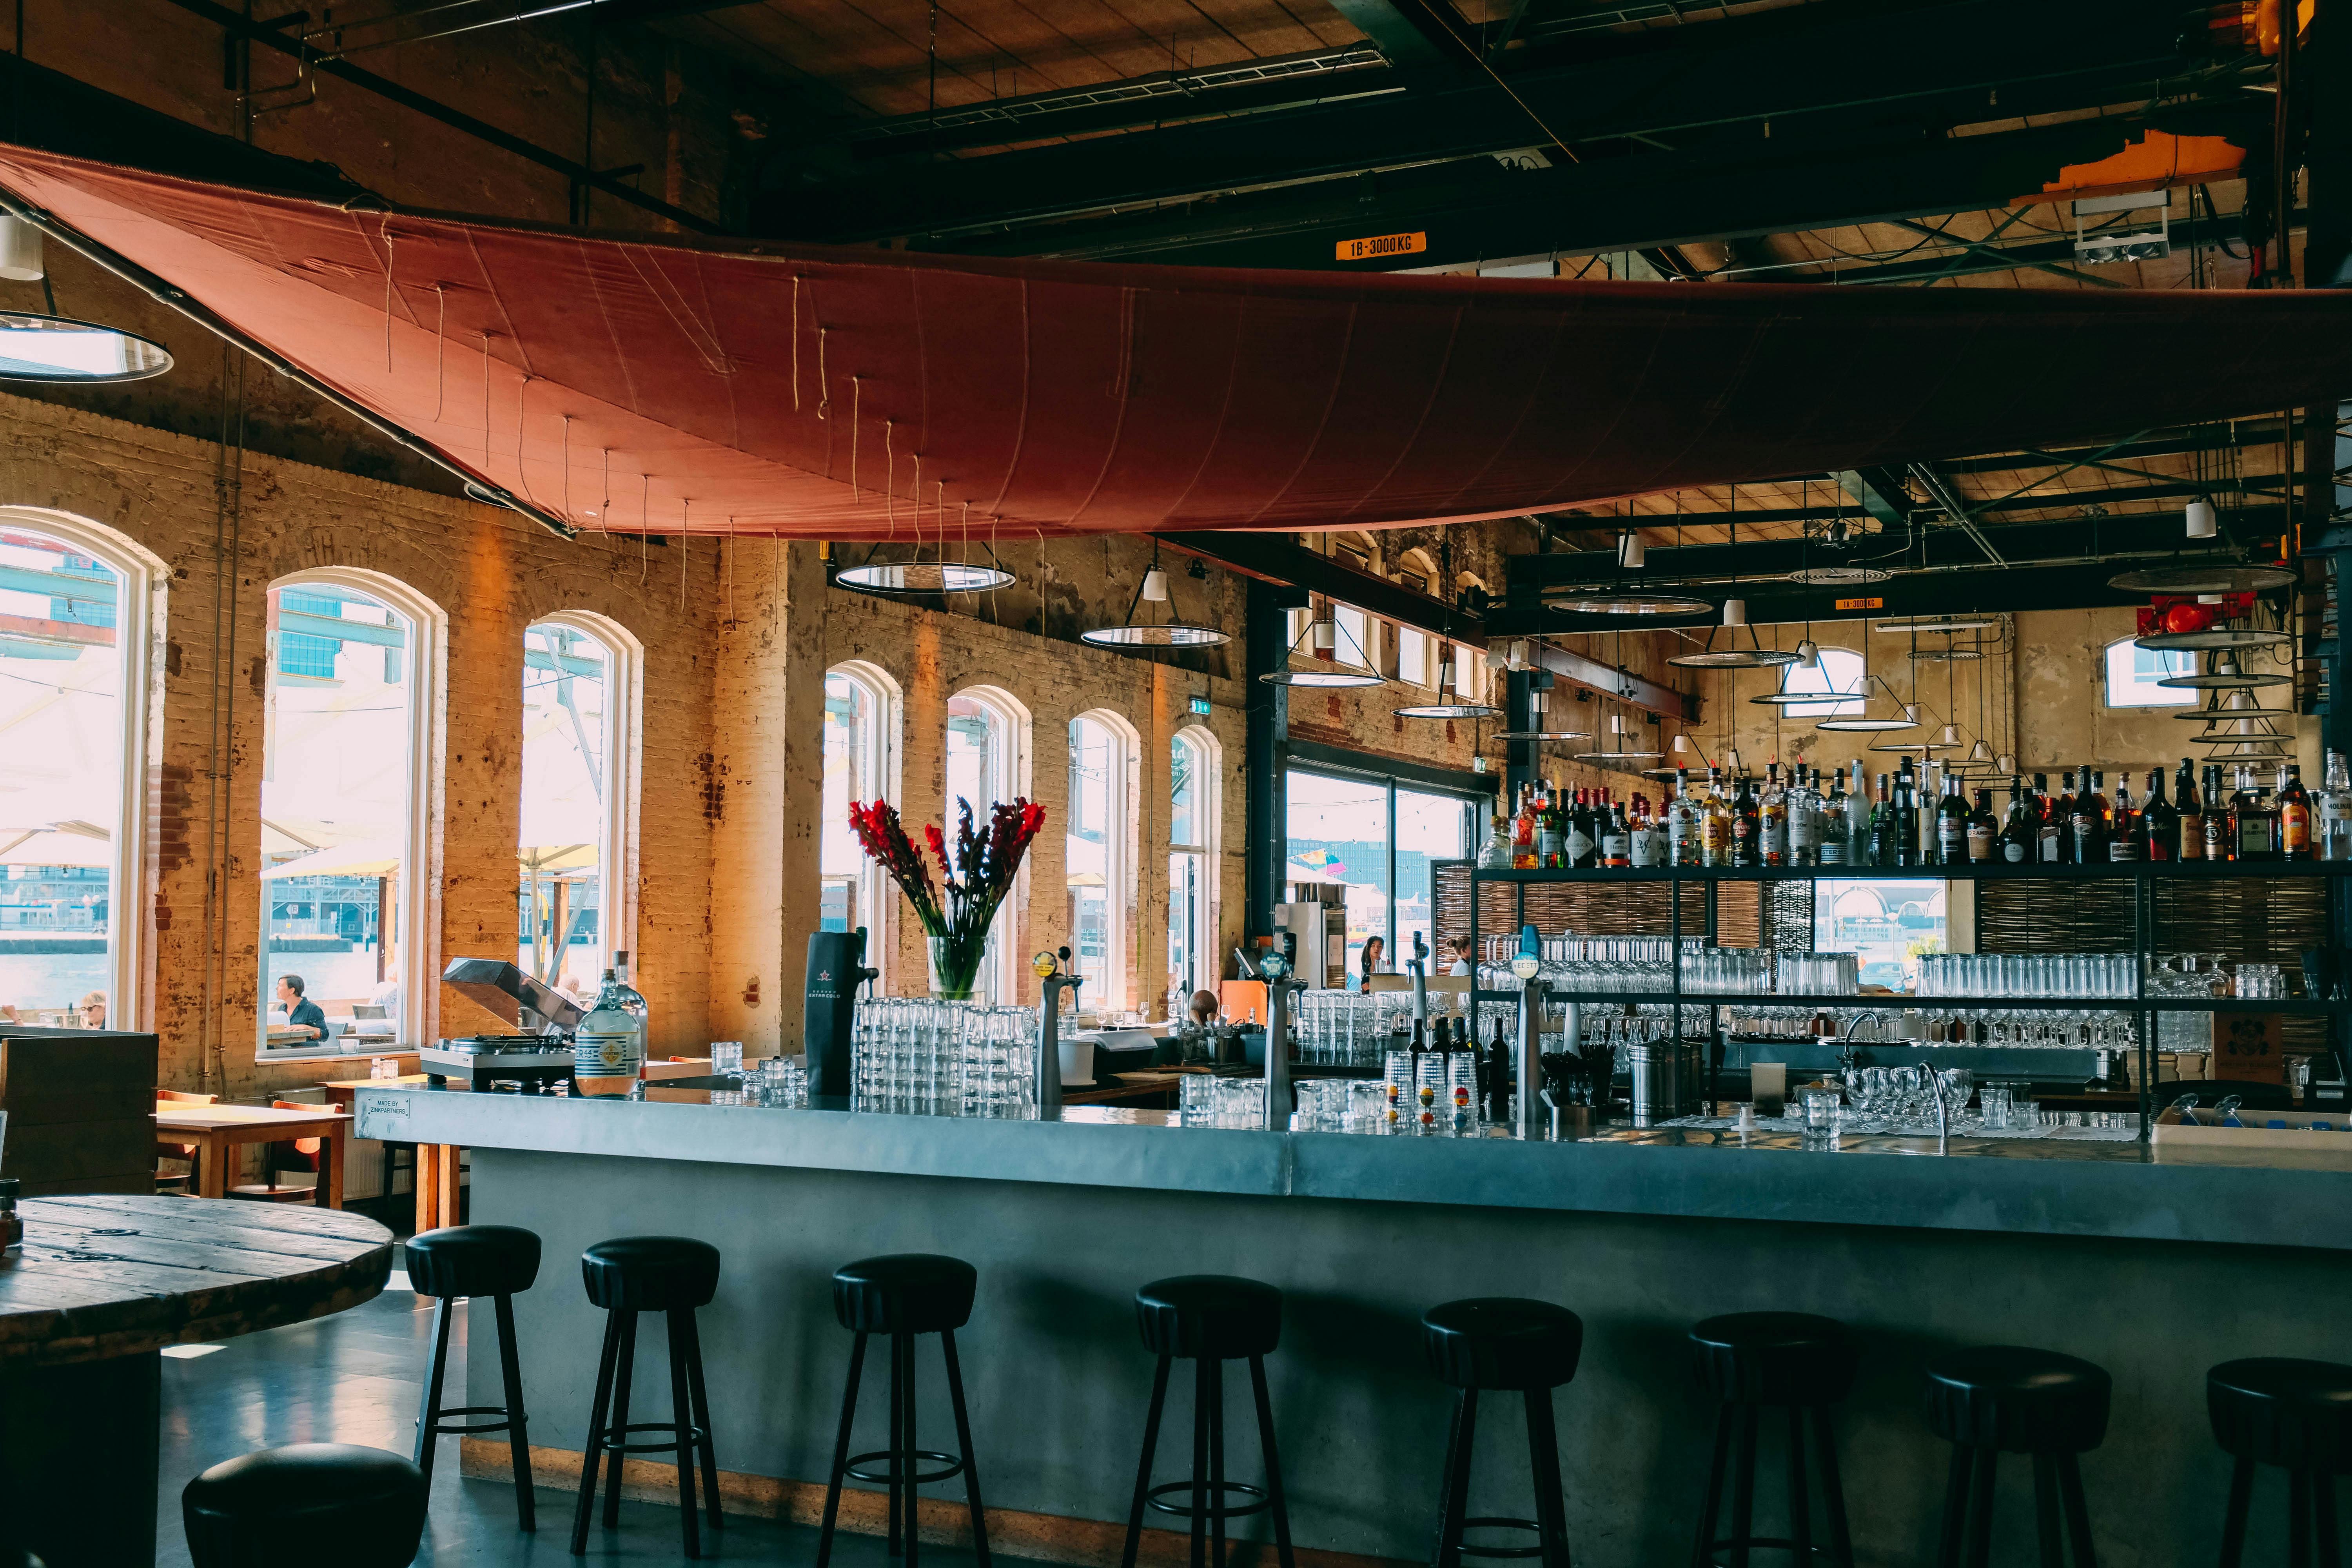 A bar | Photo: Pexels